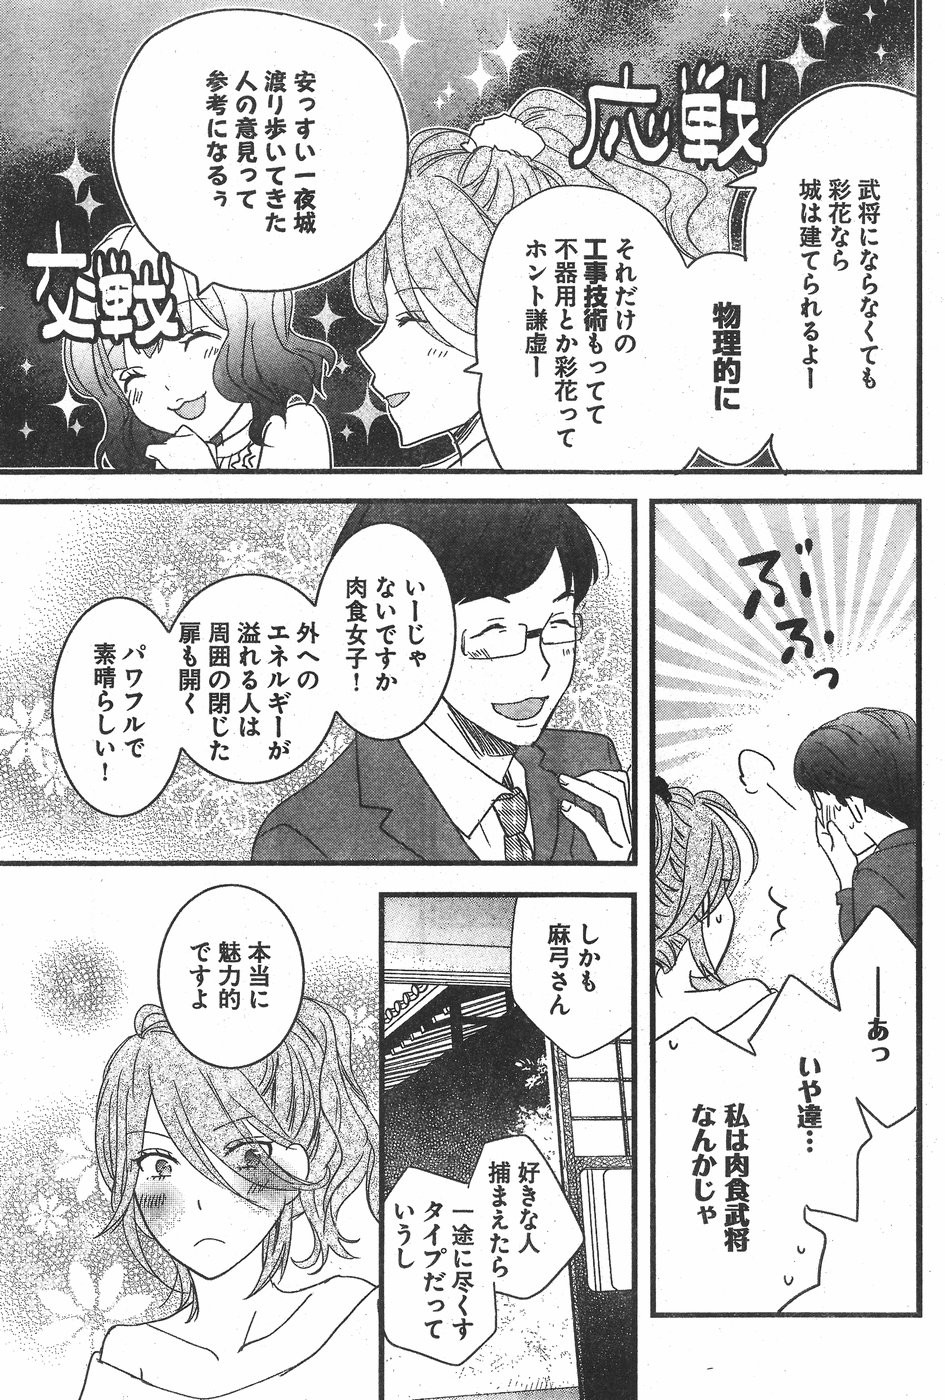 Bokura wa Minna Kawaisou - Chapter 82 - Page 3